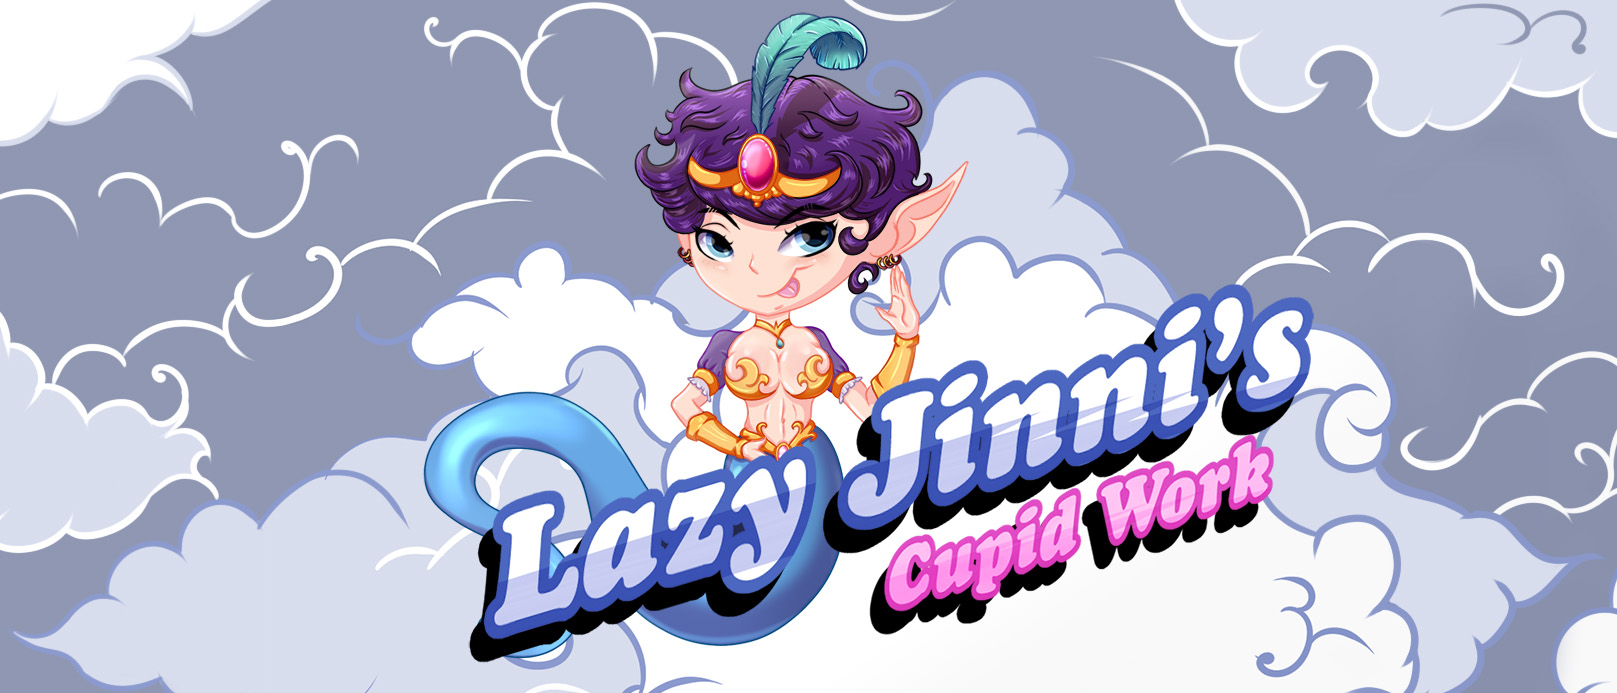 Lazy Jinni's Cupid Work